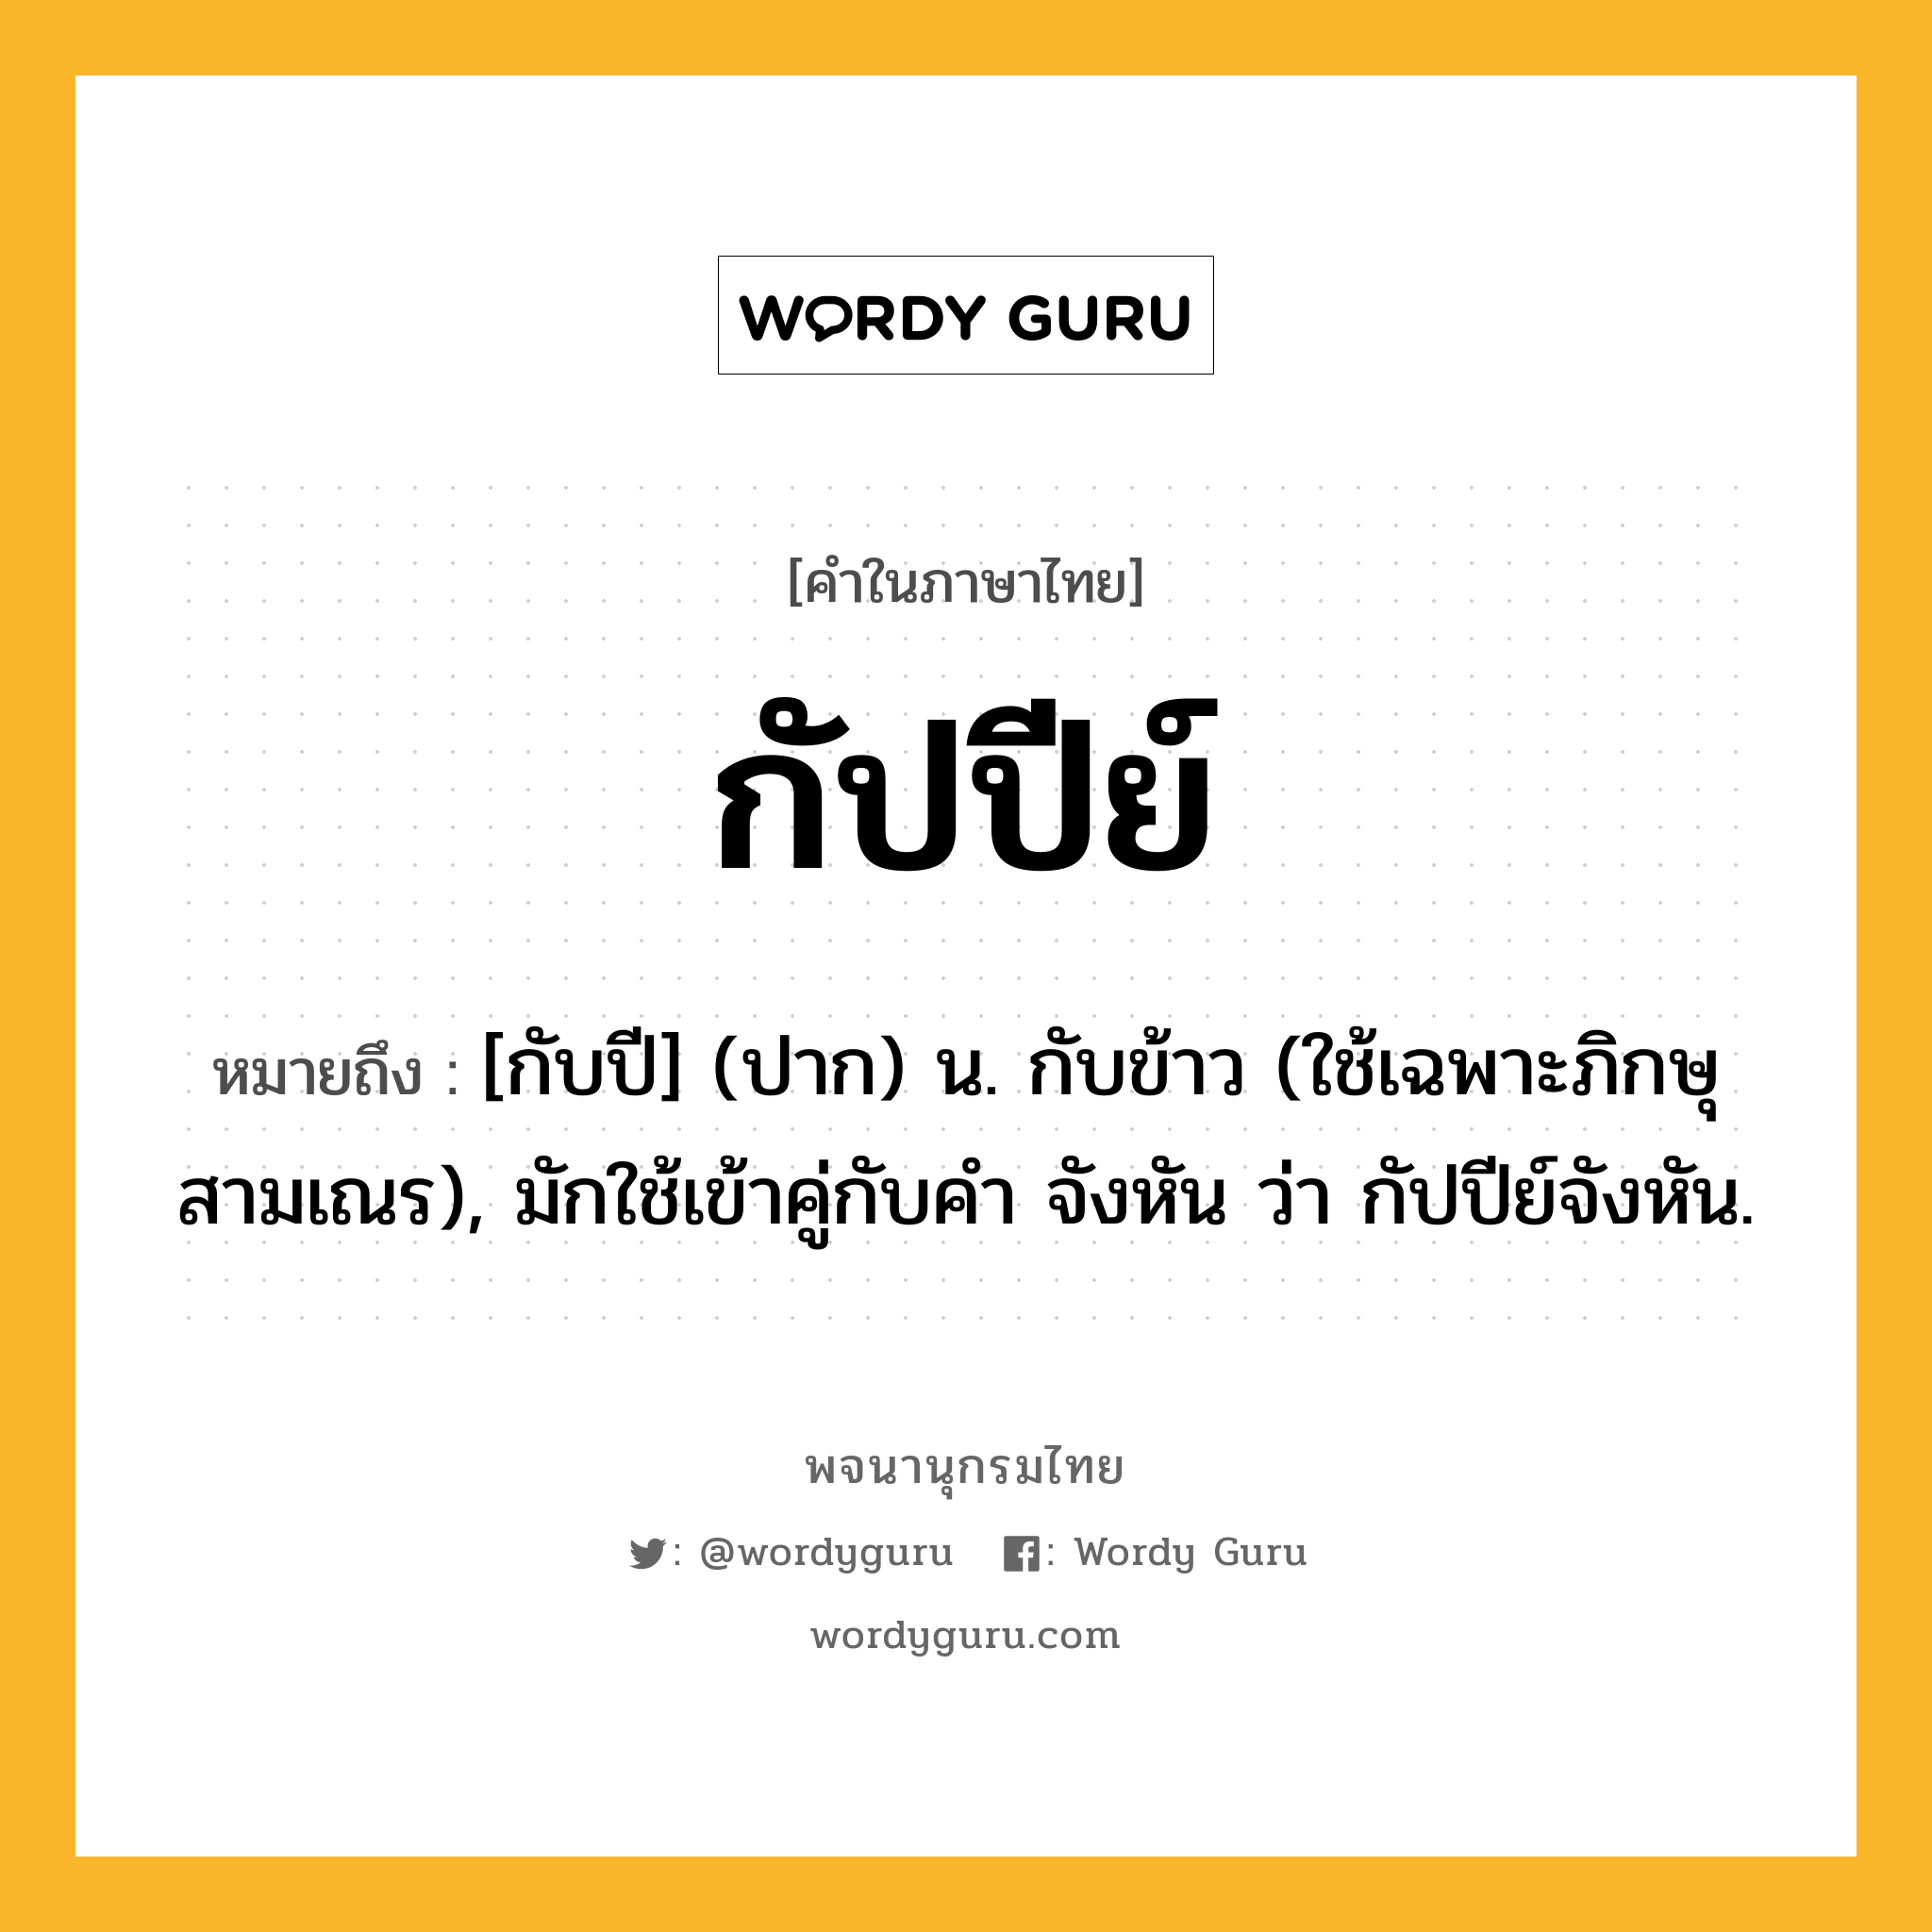 กัปปีย์ หมายถึงอะไร?, คำในภาษาไทย กัปปีย์ หมายถึง [กับปี] (ปาก) น. กับข้าว (ใช้เฉพาะภิกษุสามเณร), มักใช้เข้าคู่กับคำ จังหัน ว่า กัปปีย์จังหัน.